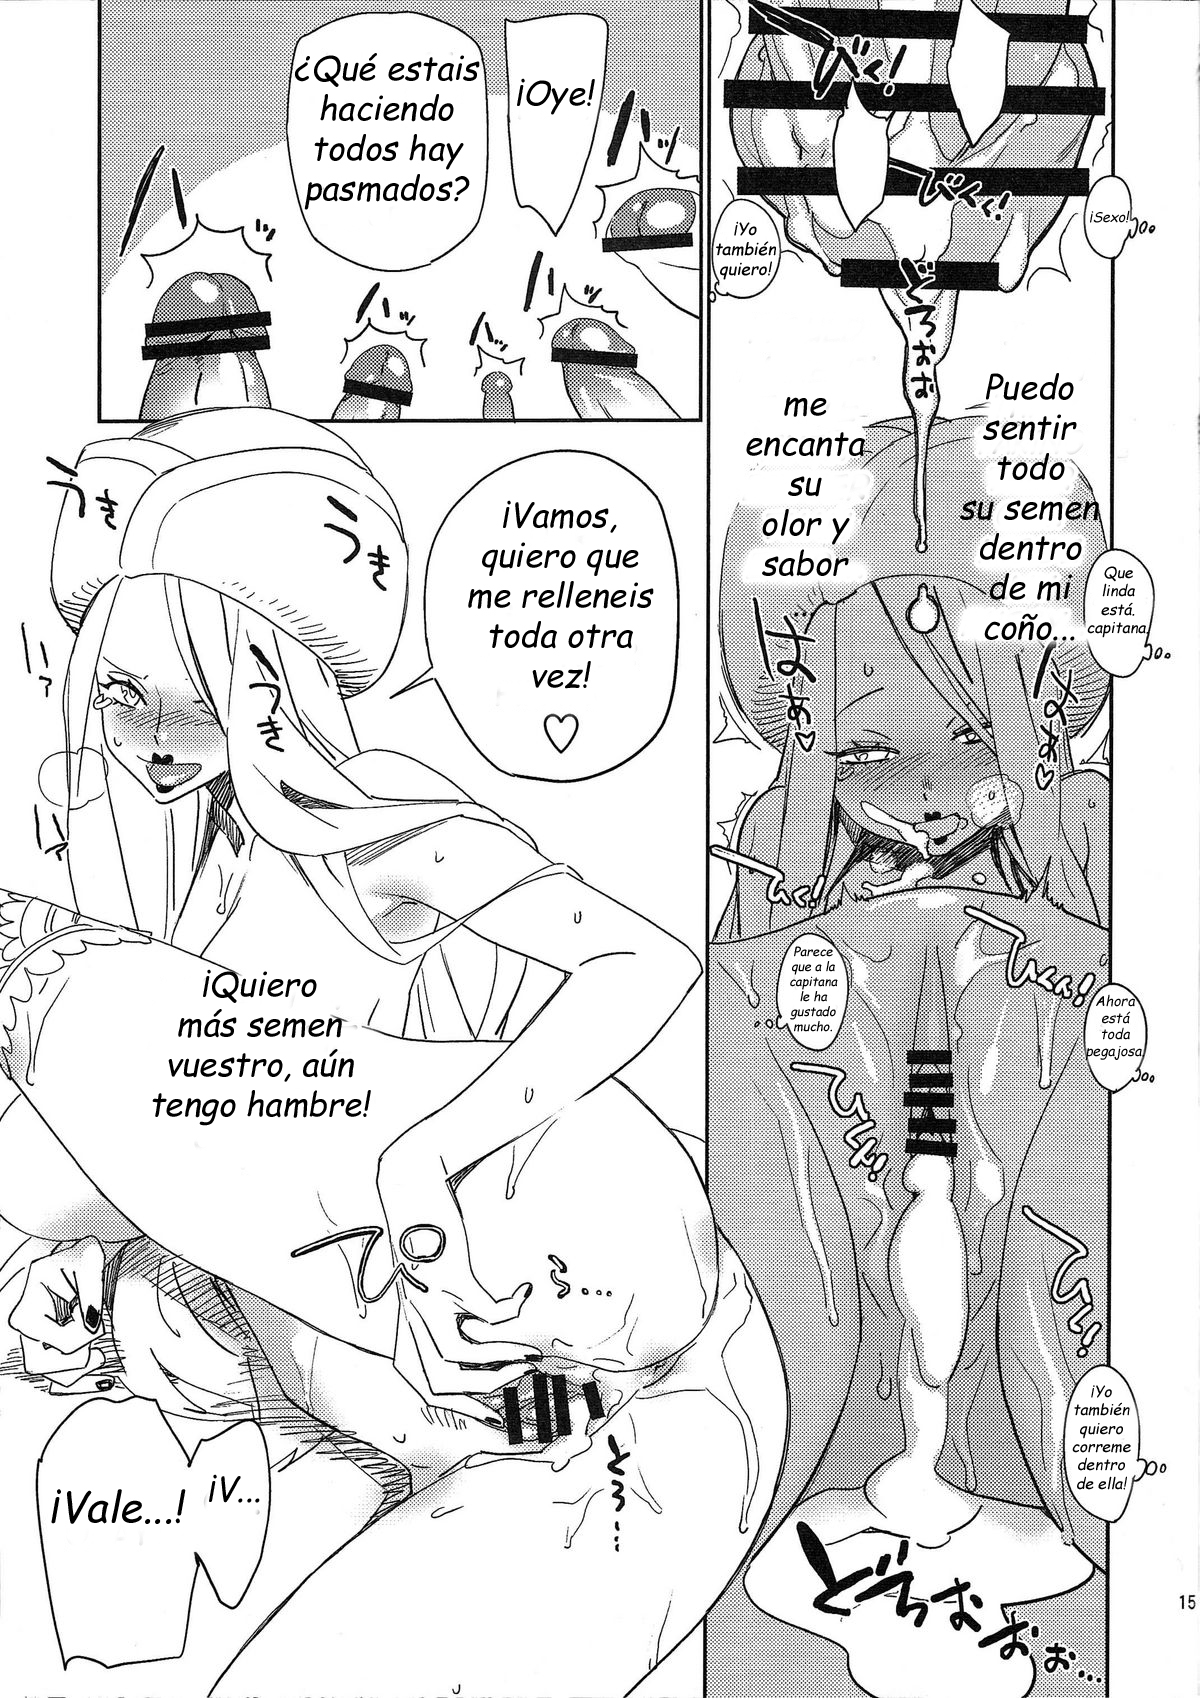 (C76) [Abradeli Kami (Bobobo )] Abura Shoukami Tsukane No.05 140000000 (One Piece) [Spanish] (by Franhort) (C76) [油照紙 (ボボボ)] 油照紙束 No.05 140000000 (ワンピース) [スペイン翻訳]